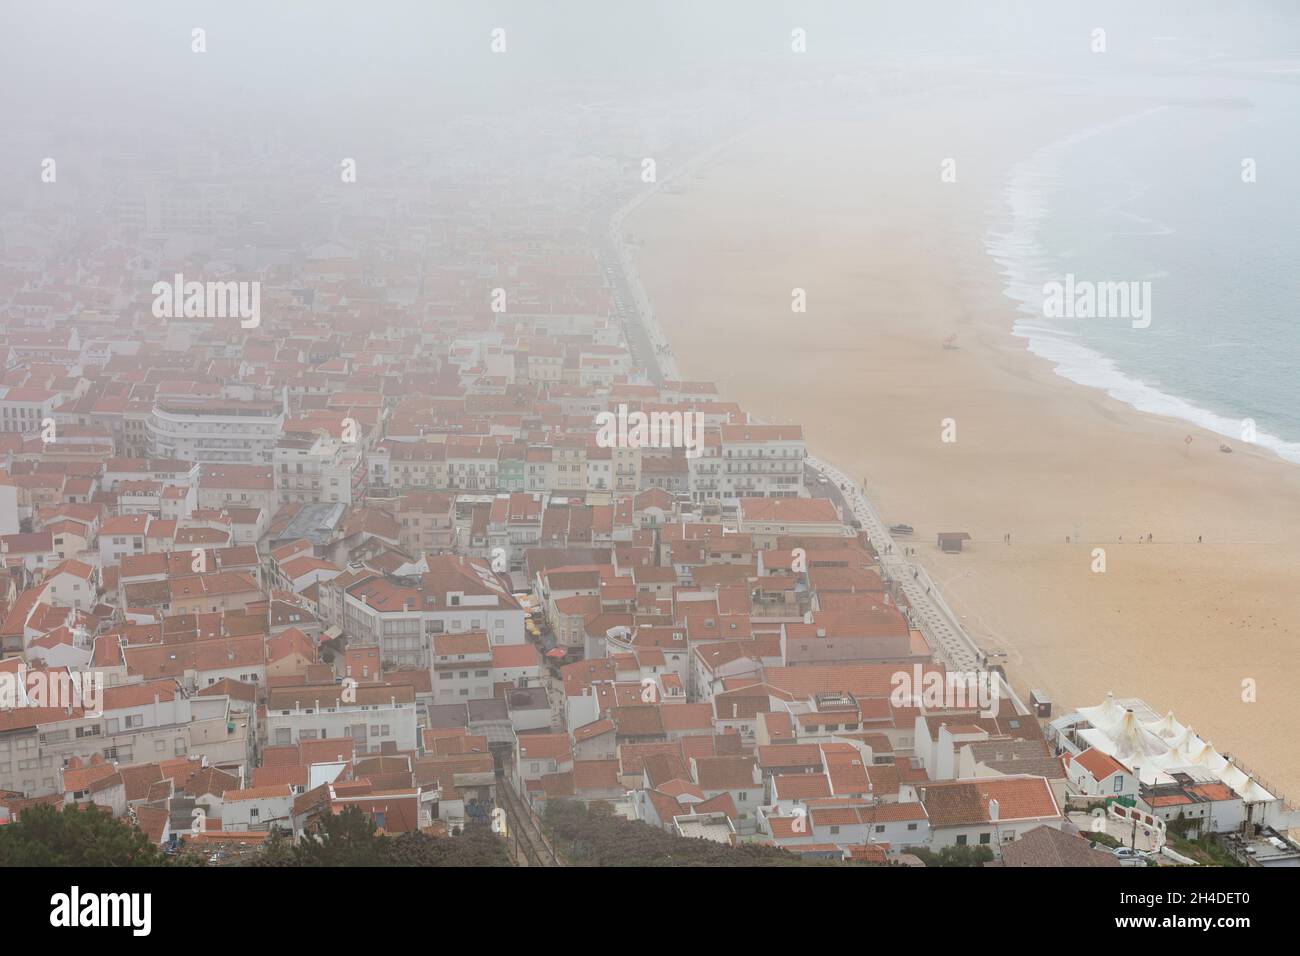 Blick vom Aussichtspunkt Miradouro do Suberco in Sitio auf den Strand von Nazaré Stock Photo